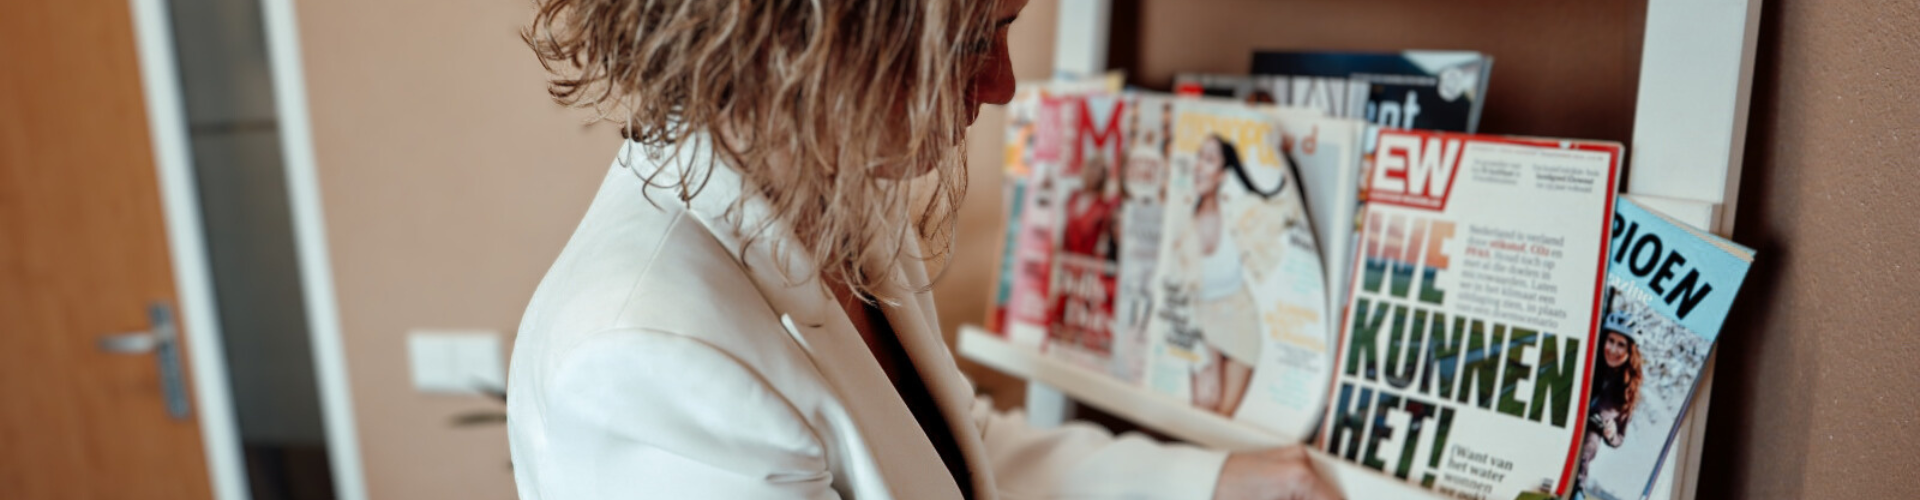 Charlotte bekijkt tijdschriften in verband met PR-mogelijkheden